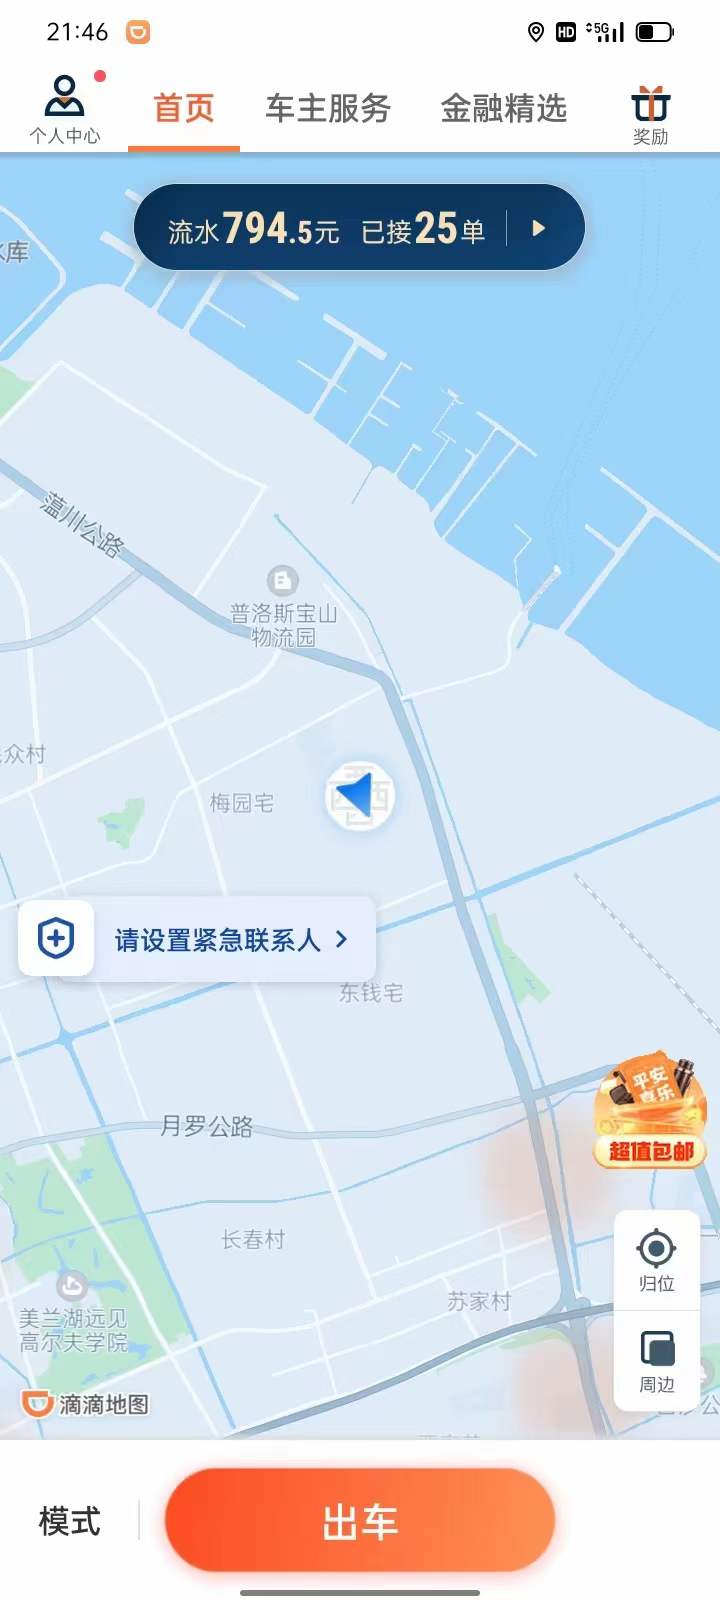 主变量网约车驾驶员资格证网上报名申请广州热点新闻